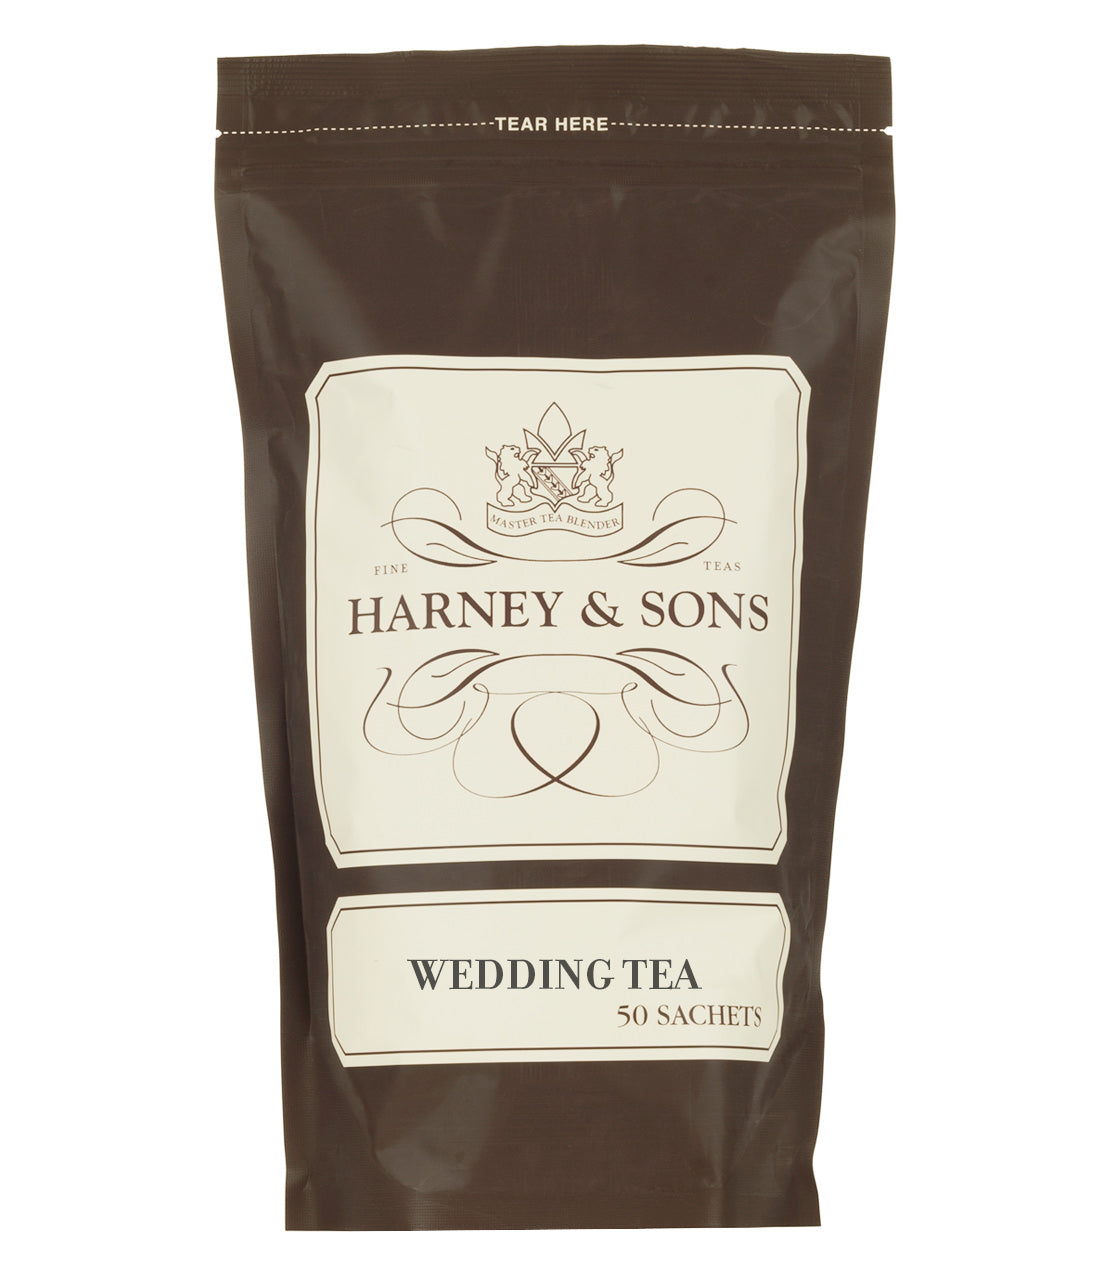 Wedding Tea, Bag of 50 Sachets - Sachets Bag of 50 Sachets - Harney & Sons Fine Teas